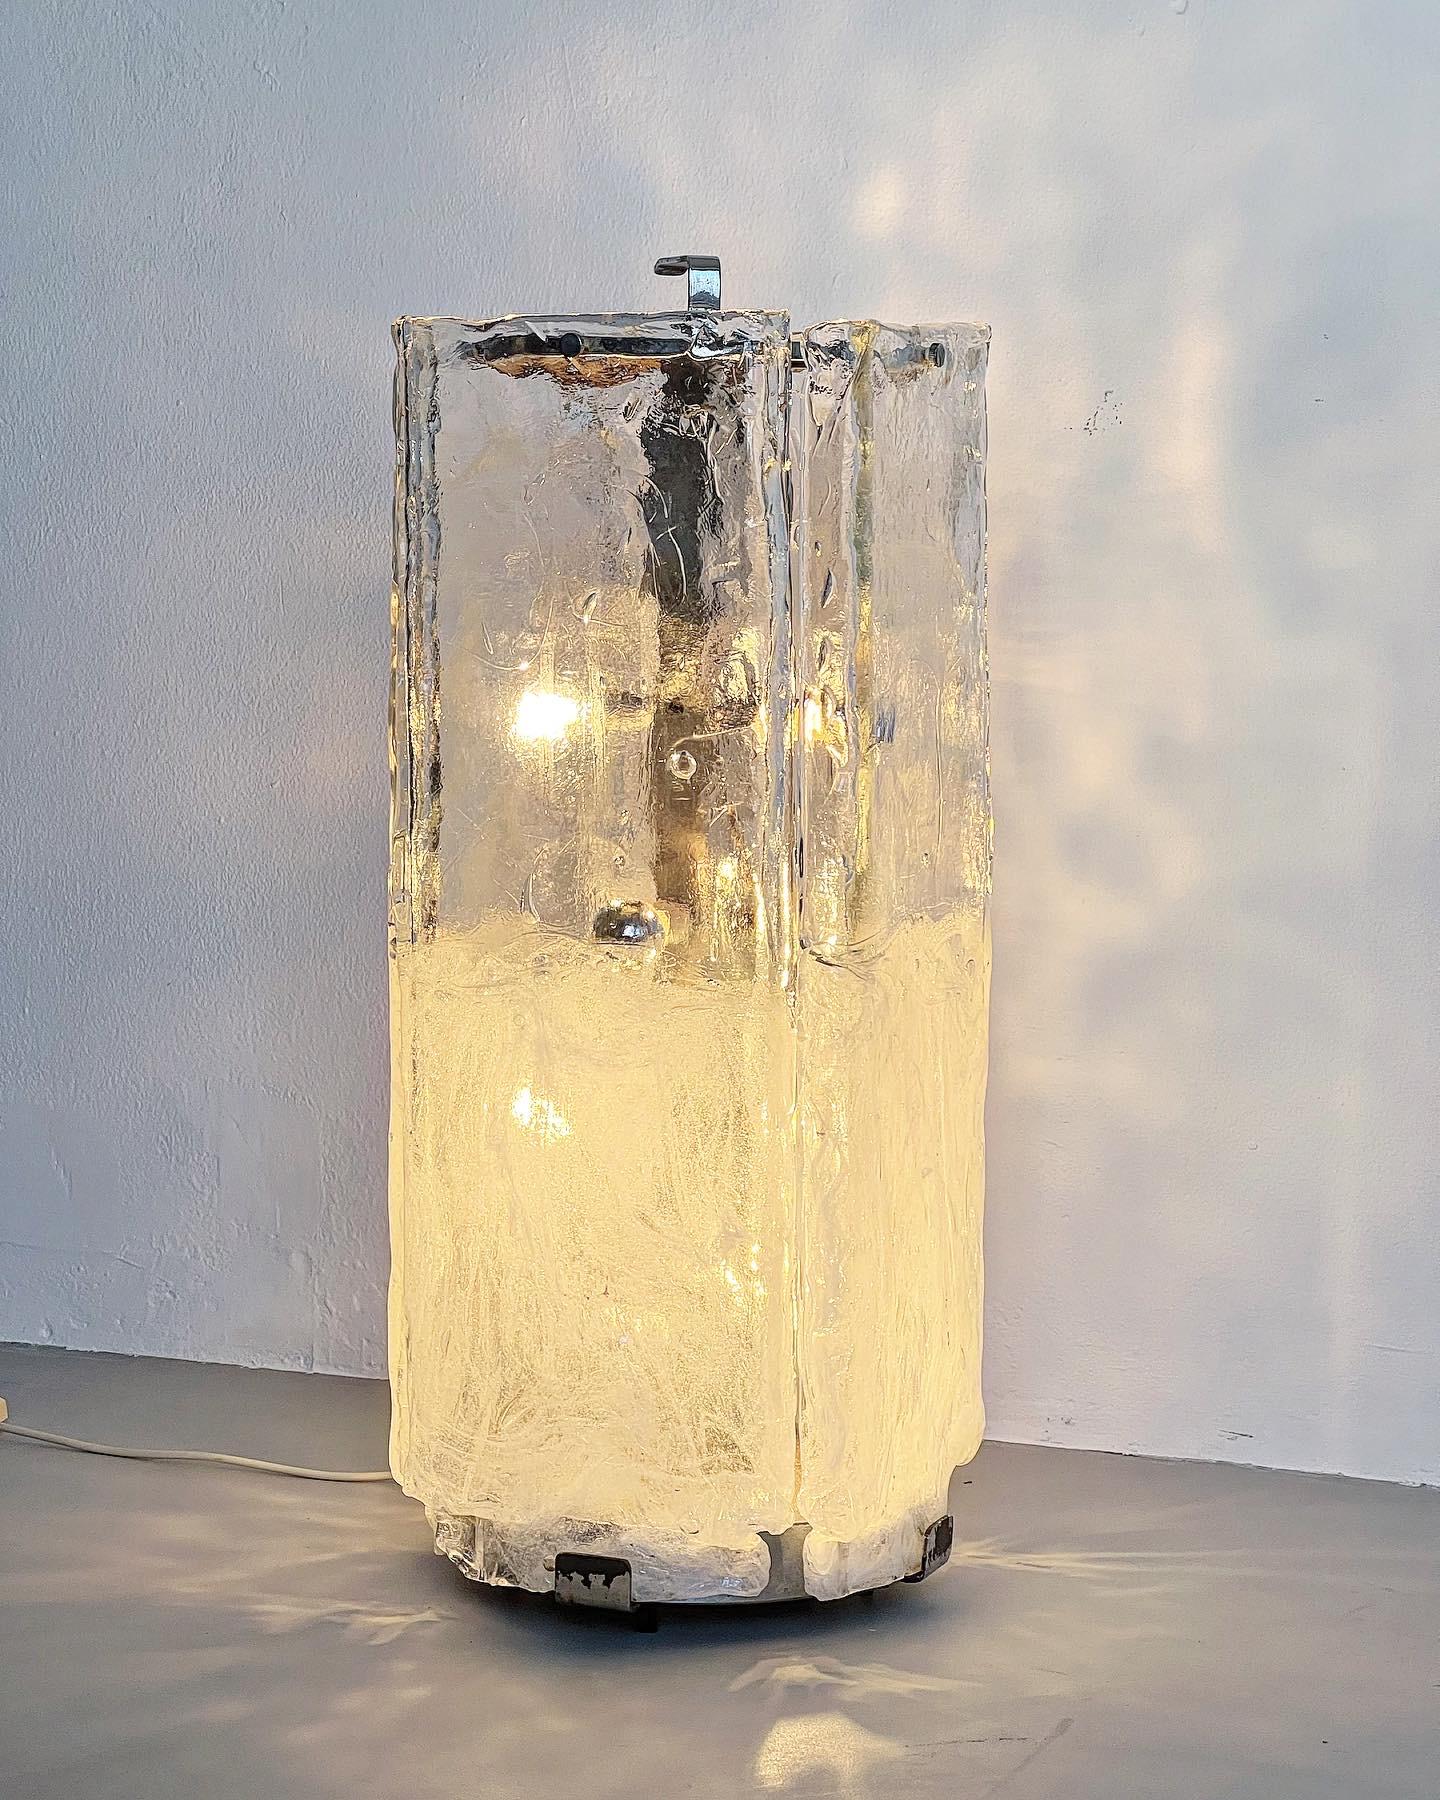 Nous proposons à la vente un lampadaire vintage, fabriqué en Italie probablement au début des années 1960. Il est composé d'une structure autoportante en métal chromé et de trois grands panneaux épais en verre de Murano - chacun mesurant 35 cm de